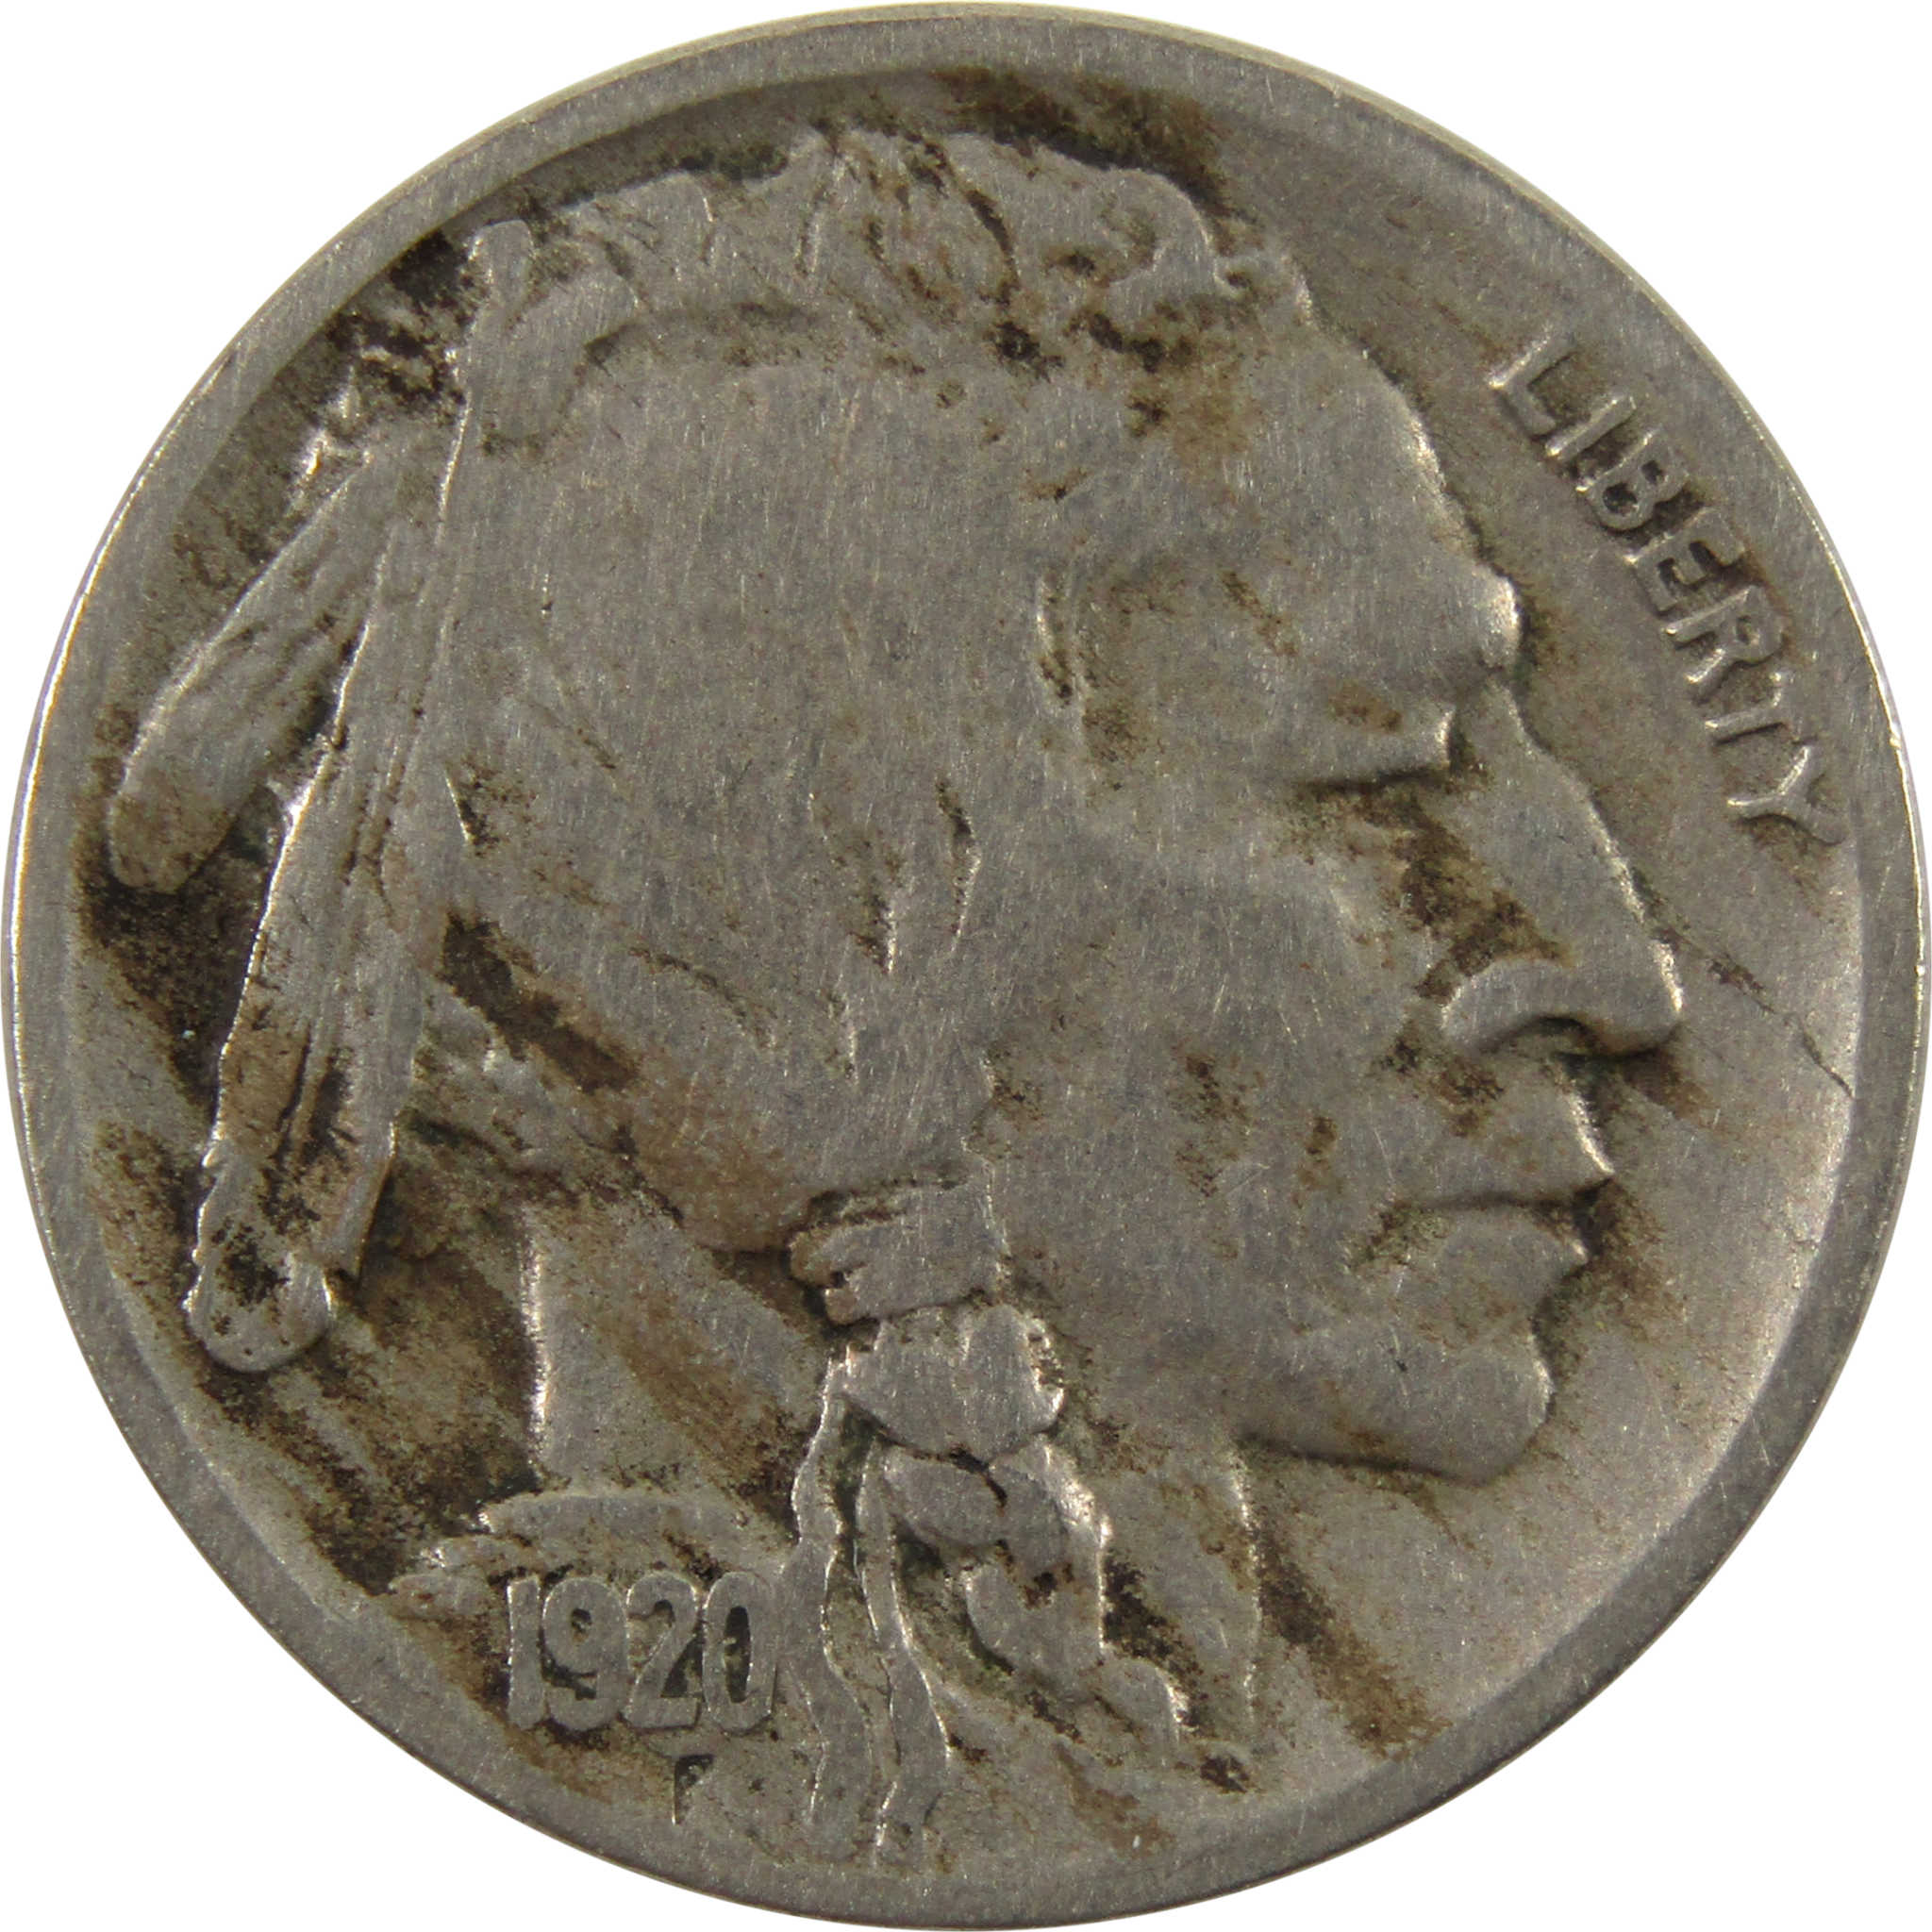 1920 D Indian Head Buffalo Nickel F Fine 5c Coin SKU:I9448